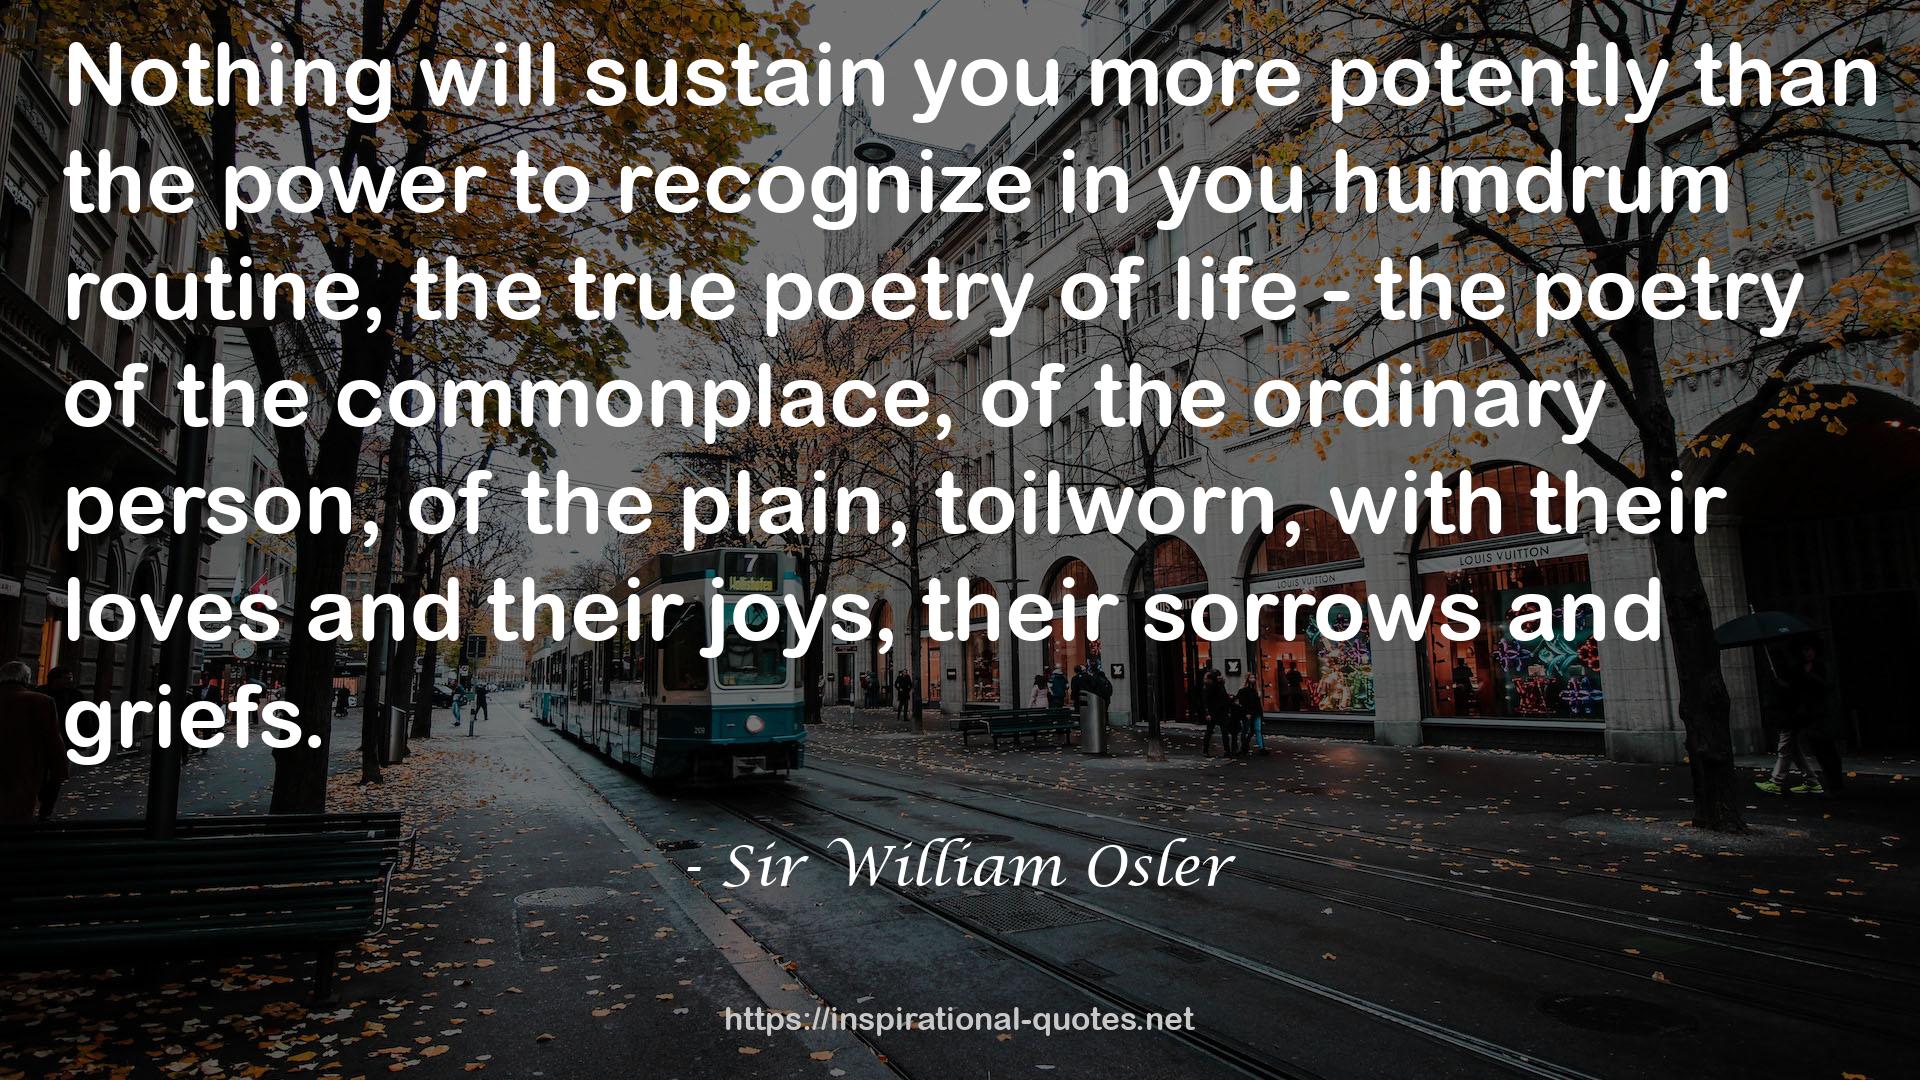 Sir William Osler QUOTES